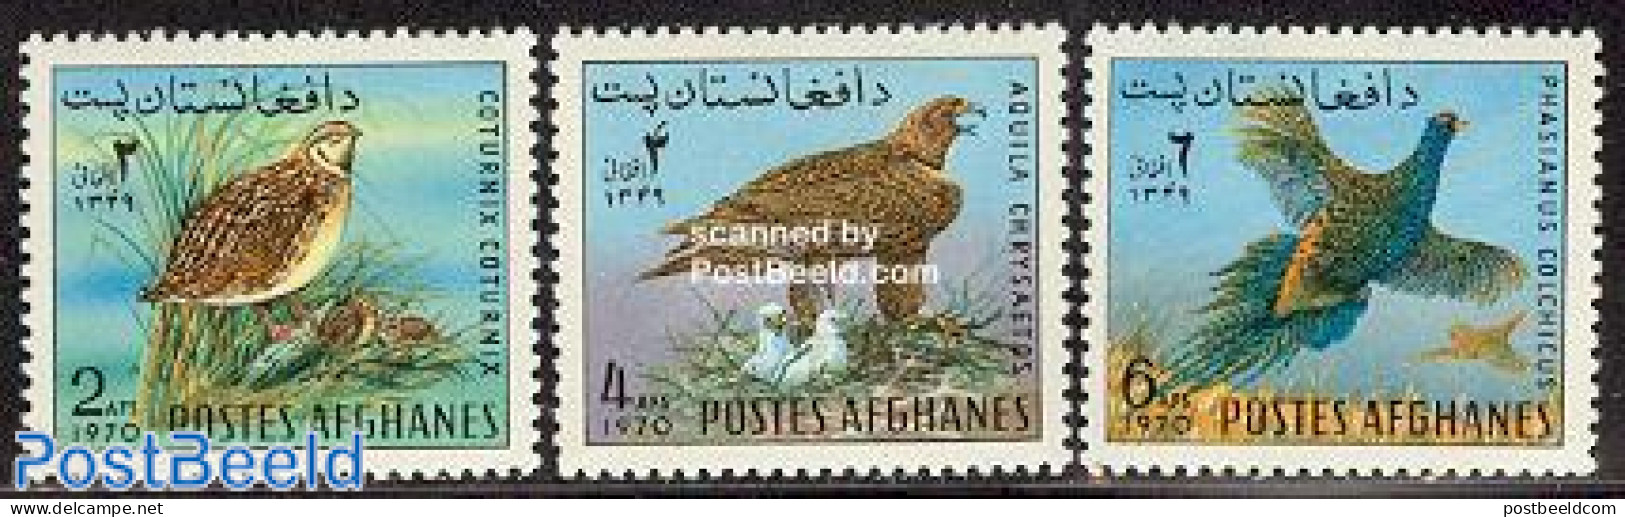 Afghanistan 1970 Birds 3v, Mint NH, Nature - Birds - Birds Of Prey - Afghanistan